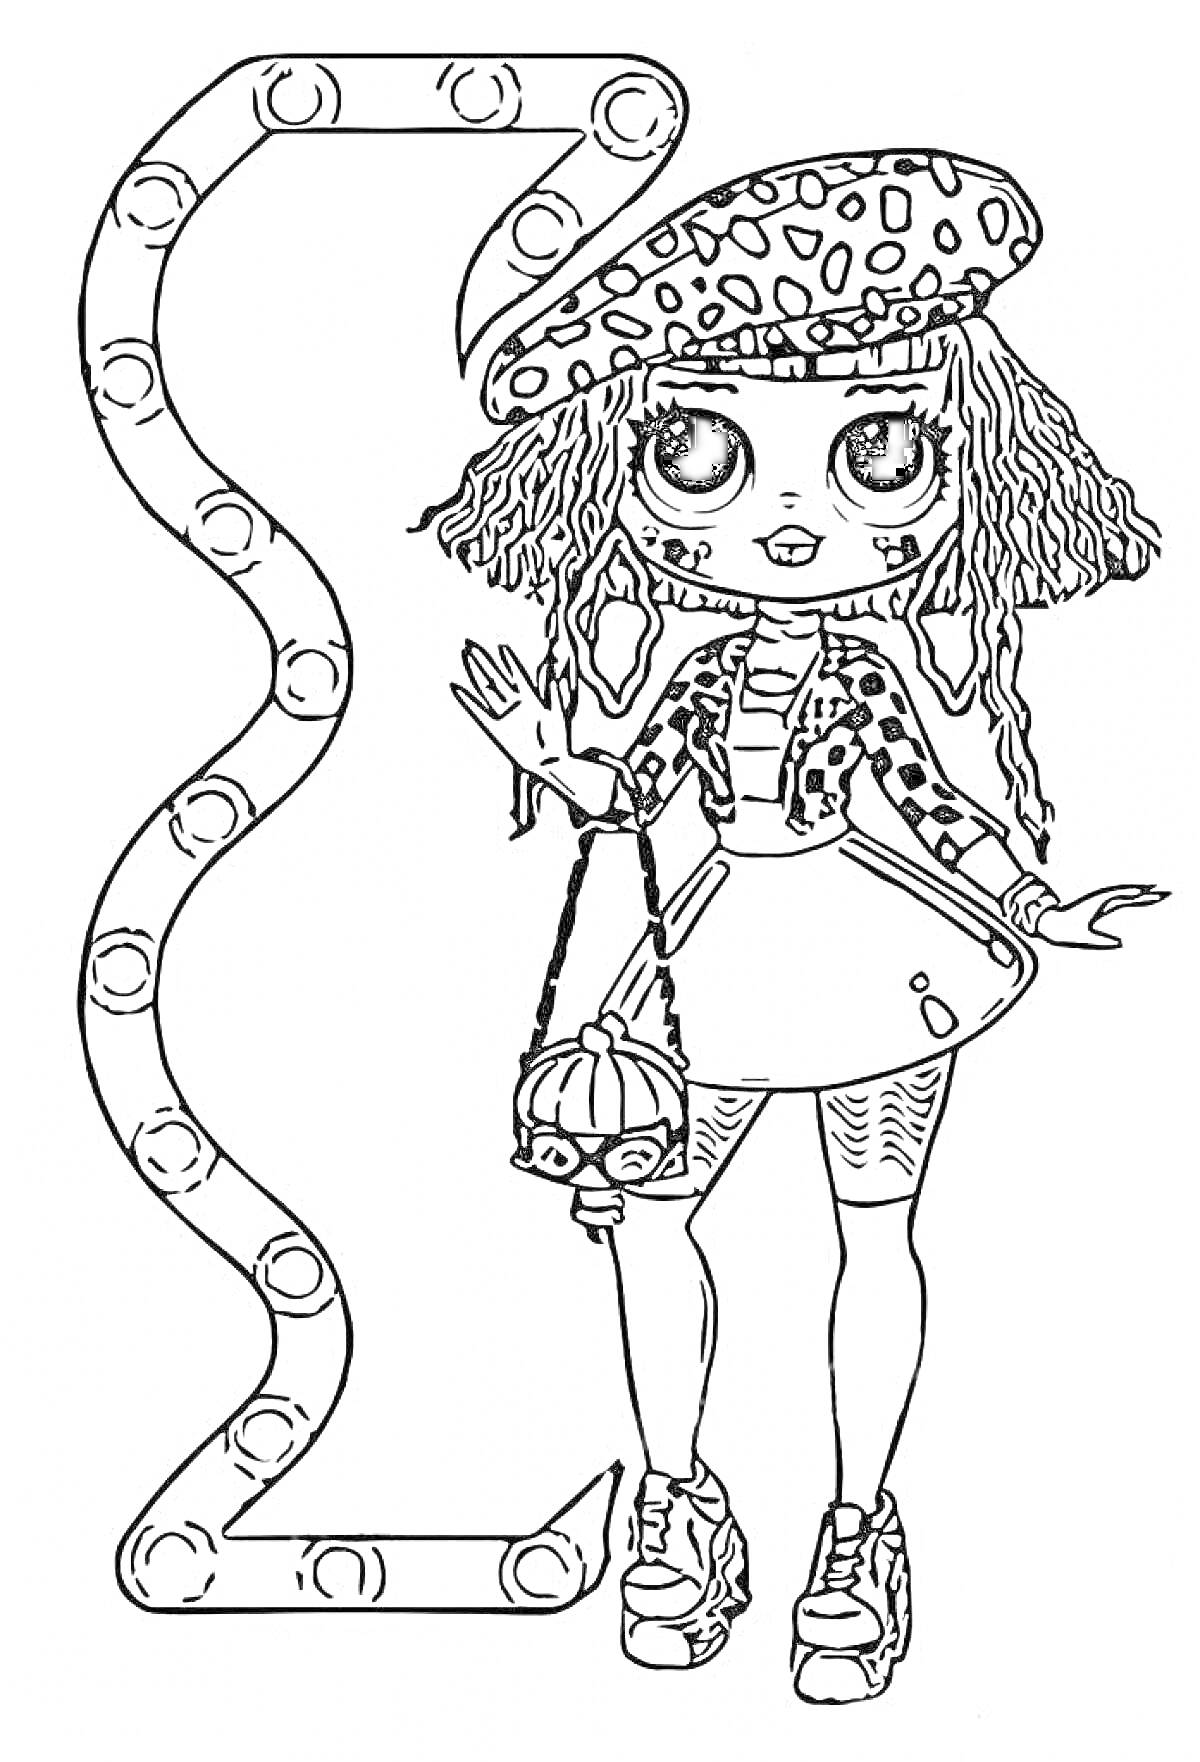 Раскраска Кукла ЛОЛ ОМГ с вьющимися волосами в шляпе, берет в горошек, на фоне изогнутой рамы с круглыми лампочками, сумочка через плечо, юбка с карманом, кроссовки на платформе